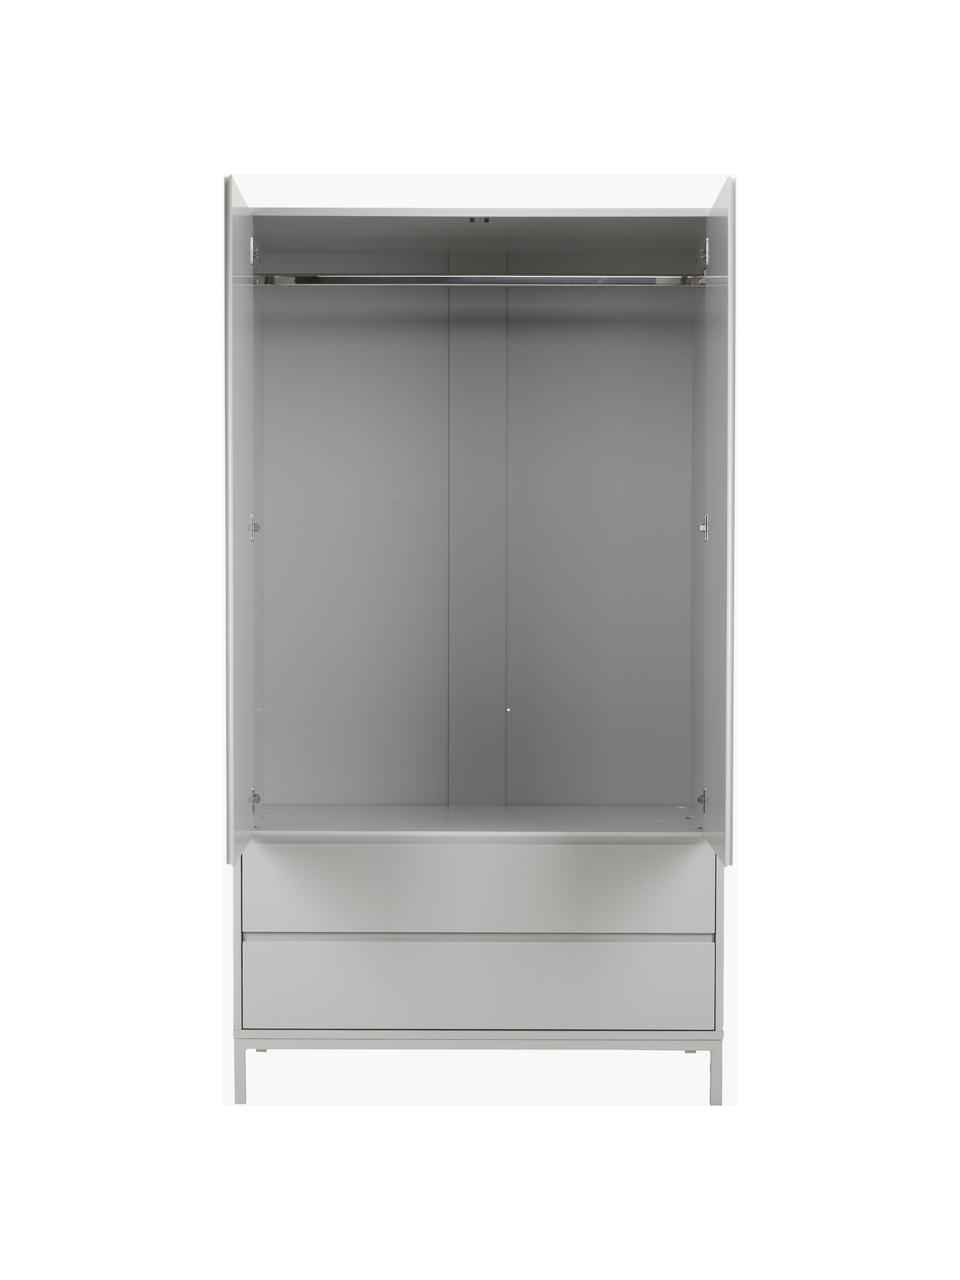 Kledingkast Ikaro in grijs, 2 deuren, Frame: gelakt MDF, Poten: gepoedercoat metaal, Hout, grijs gelakt, B 110 x H 200 cm